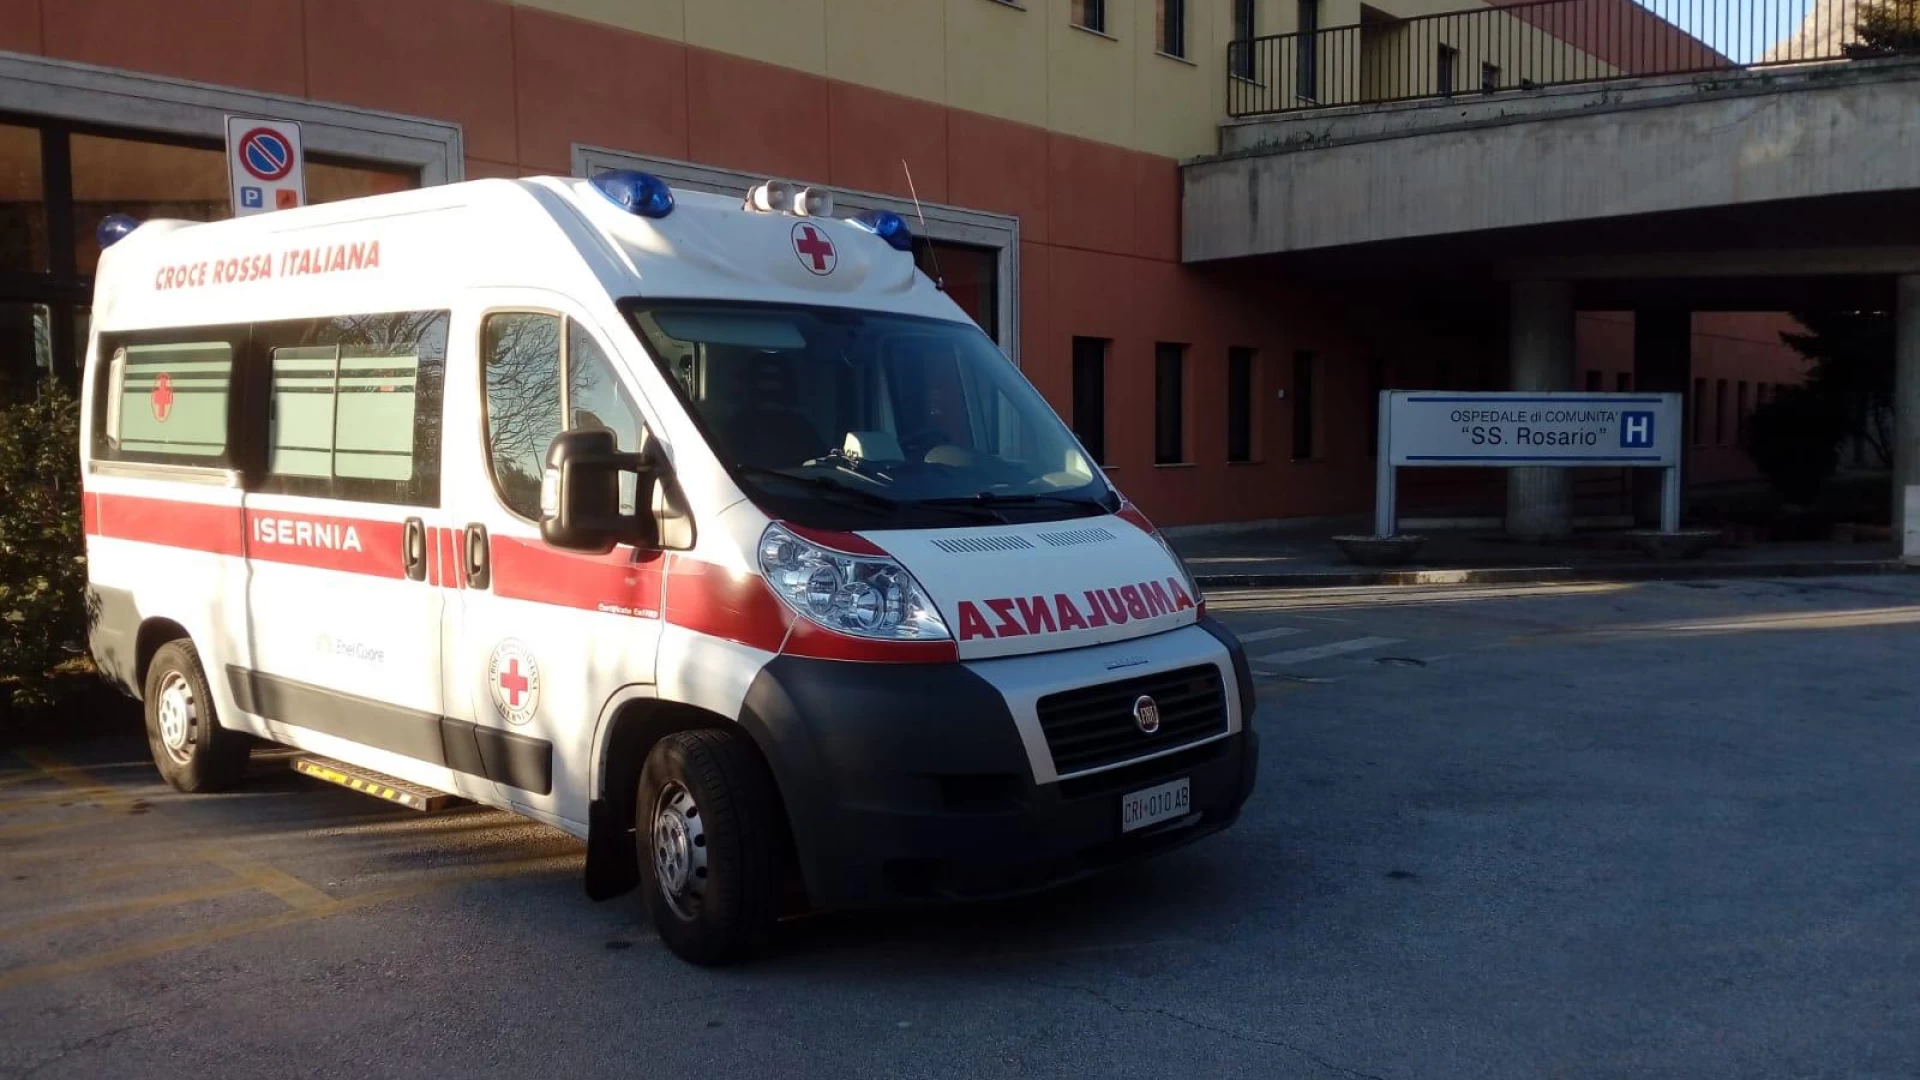 Isernia: il trasporto dializzati assicurato fino al prossimo 5 gennaio dalla Croce Rossa. Il comunicato a firma del presidente regionale Alabastro.